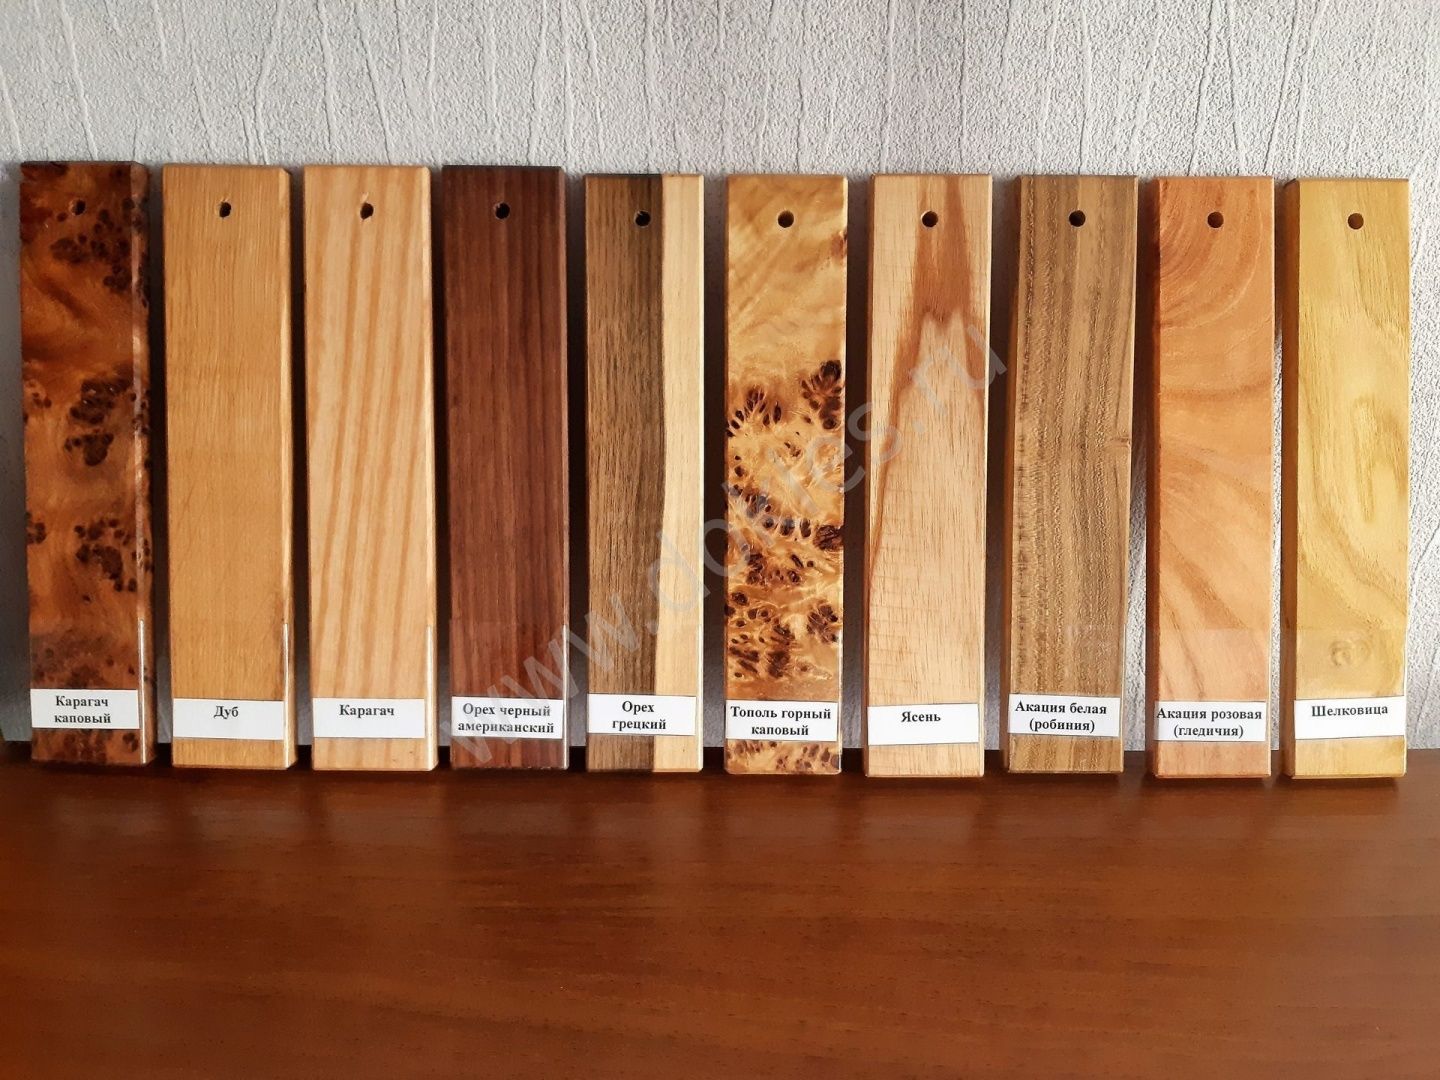 Образцы разных пород дерева 10*40*200 мм купить в Краснодаре, цена в интернет-магазине